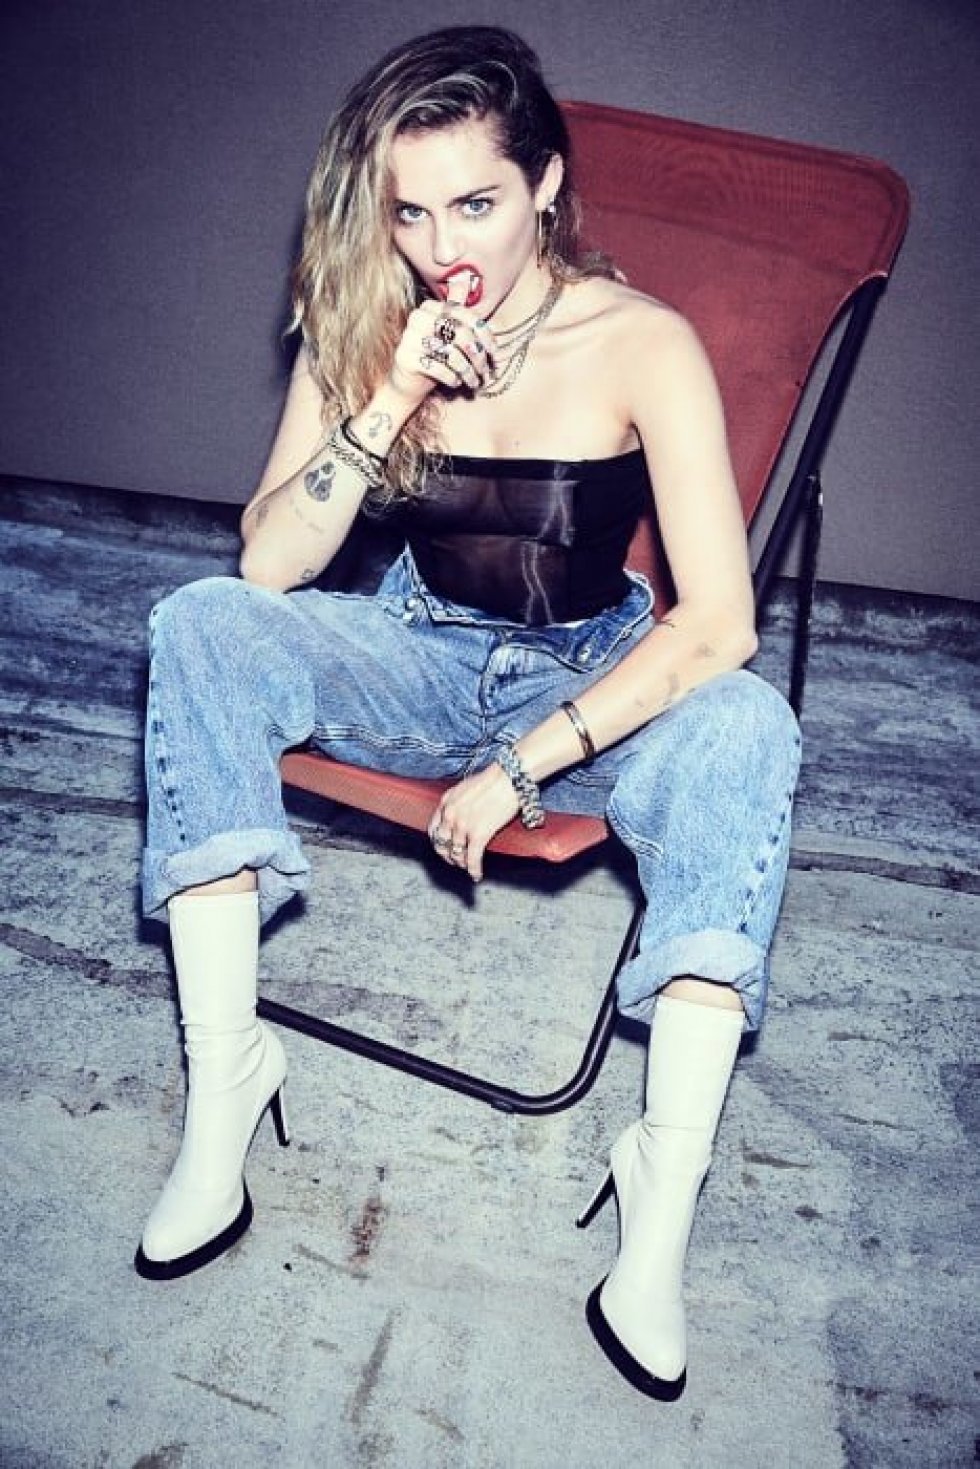 Miley Cyrus og 24 andre kunstnere annonceret til Tinderbox